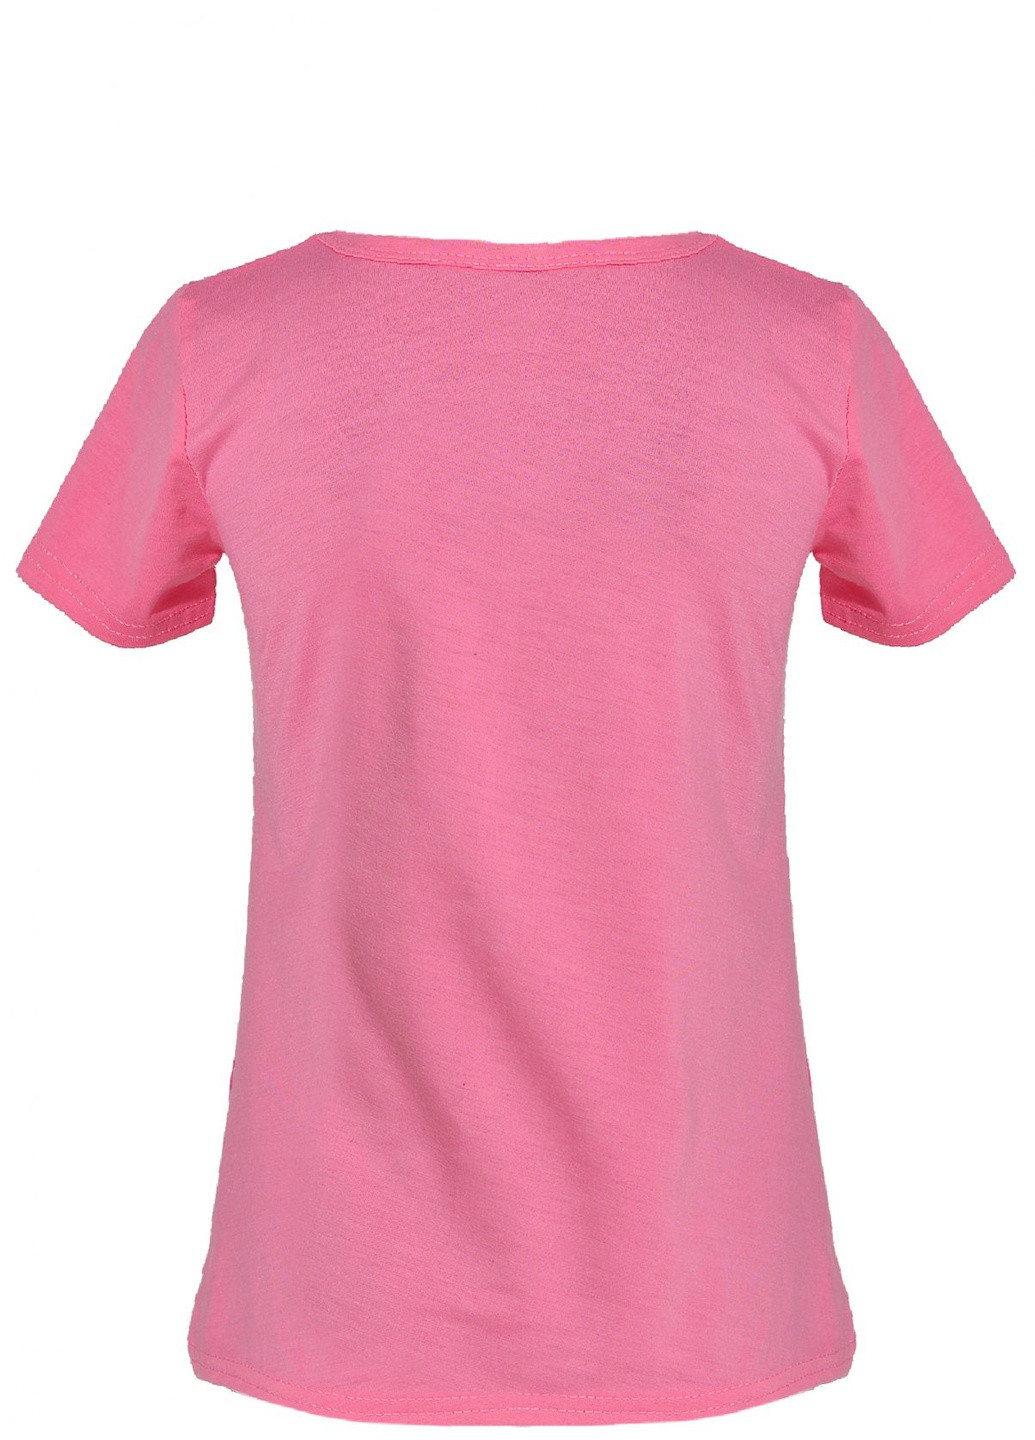 Розовая футболки футболка на дівчаток (бабочка 2)16876-731 Lemanta